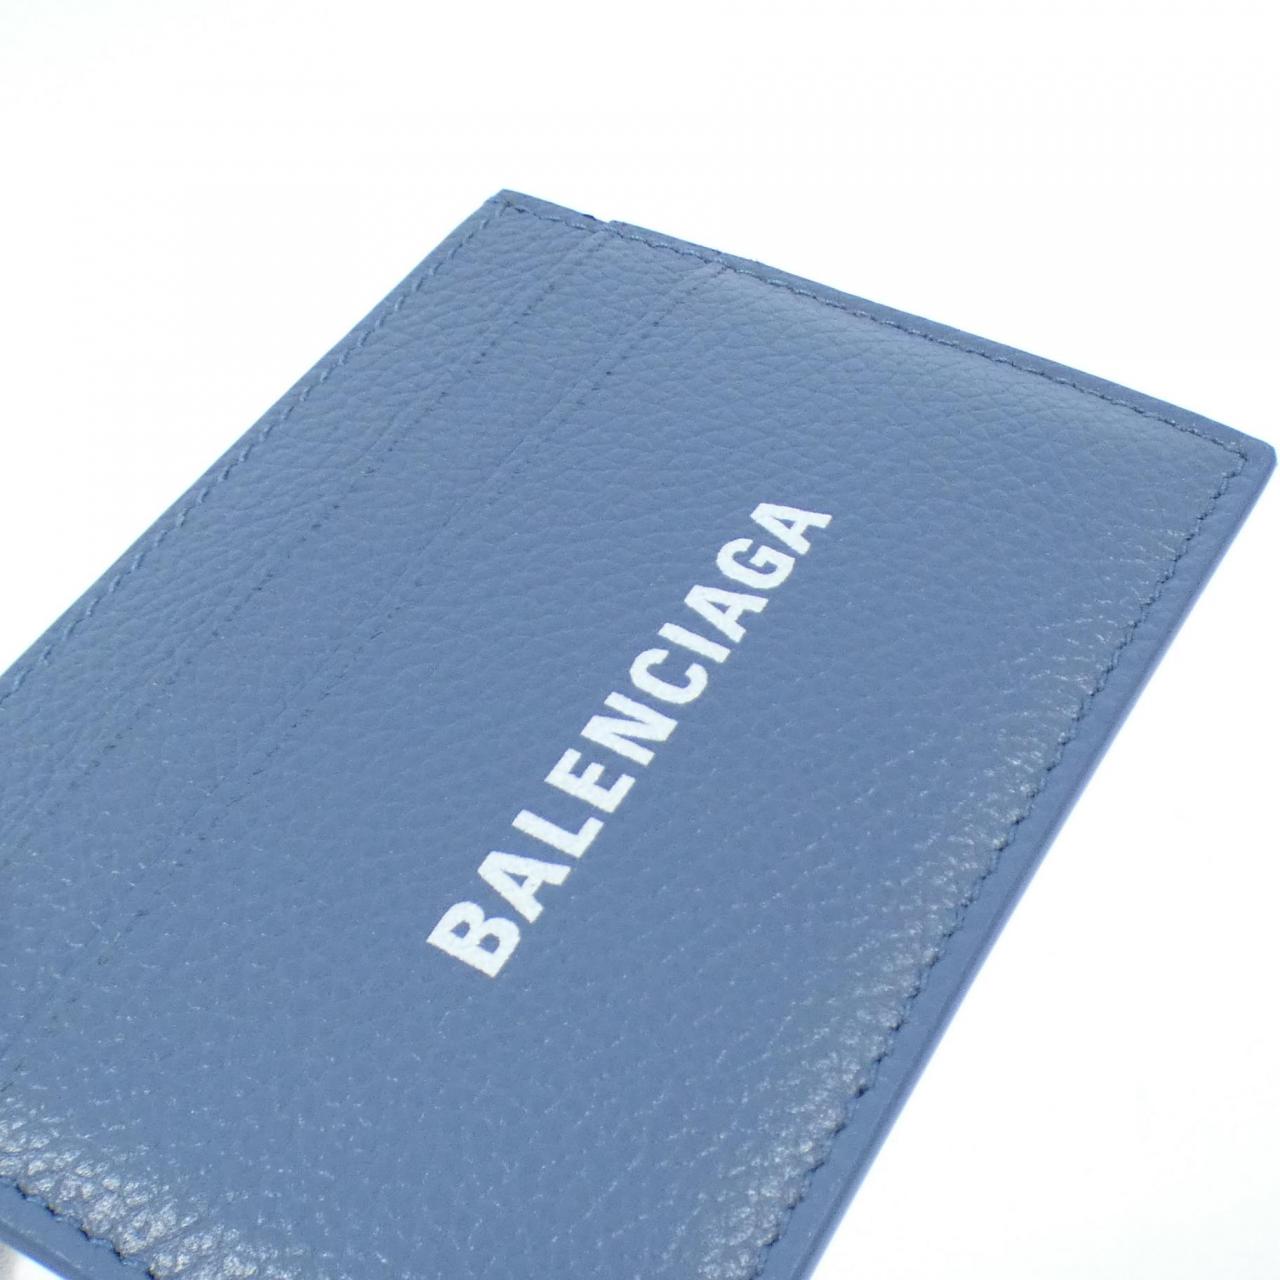 【新品】バレンシアガ CASH CARD HOLDER 594309 1IZI3 カードケース